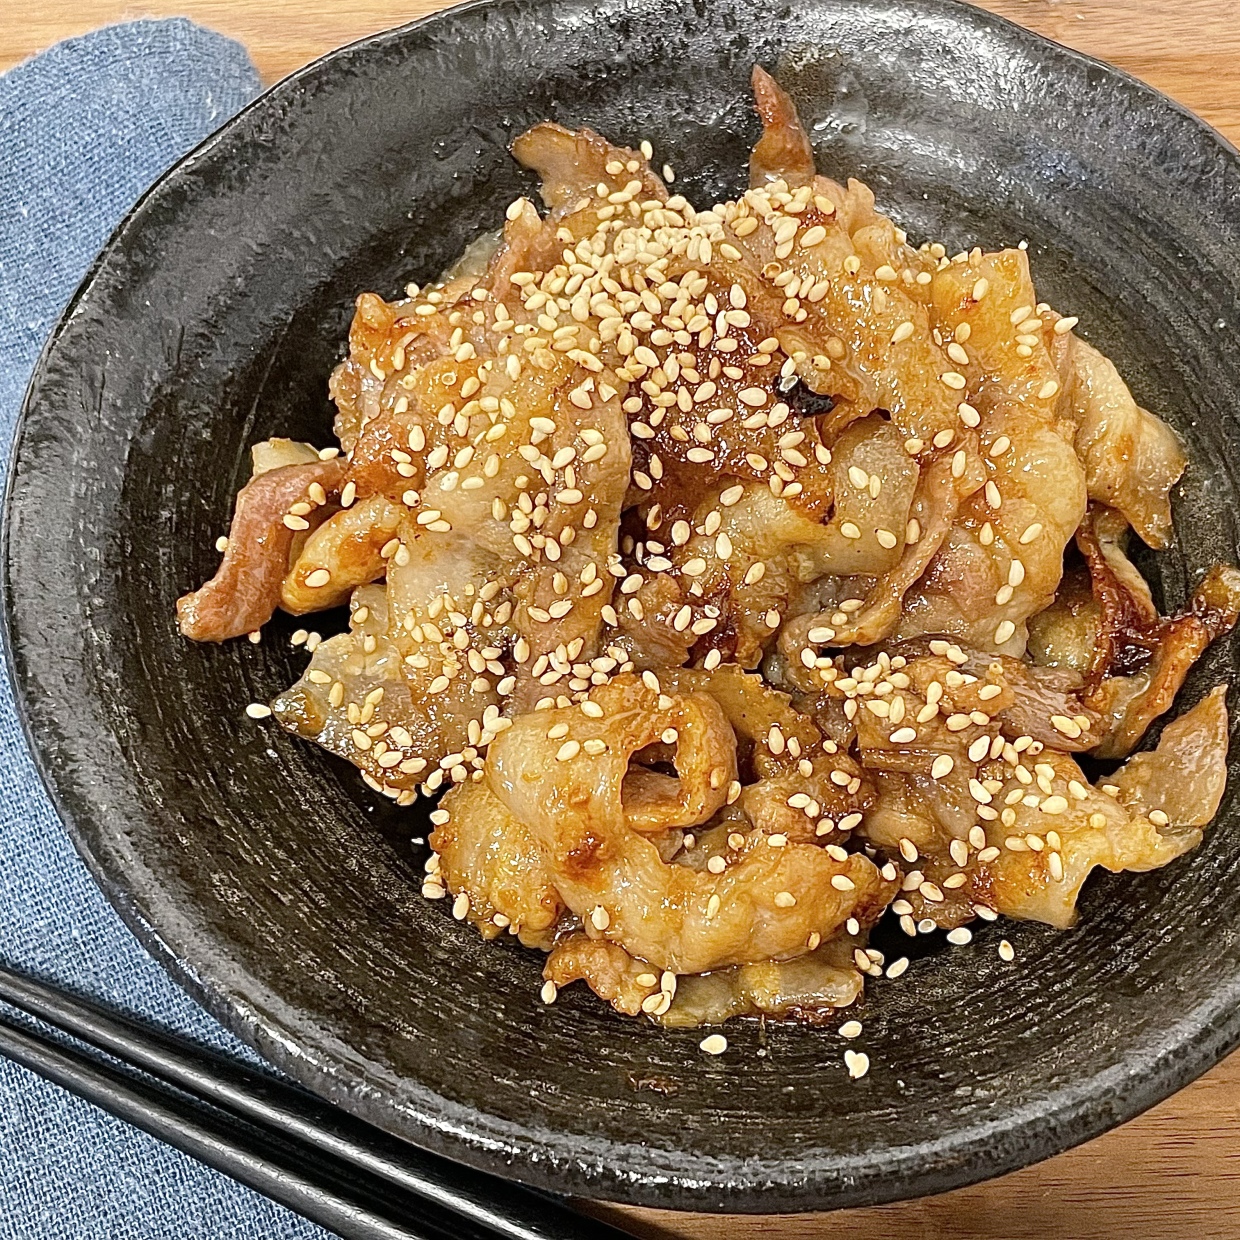  韓国風焼肉豚バラデジカルビ 